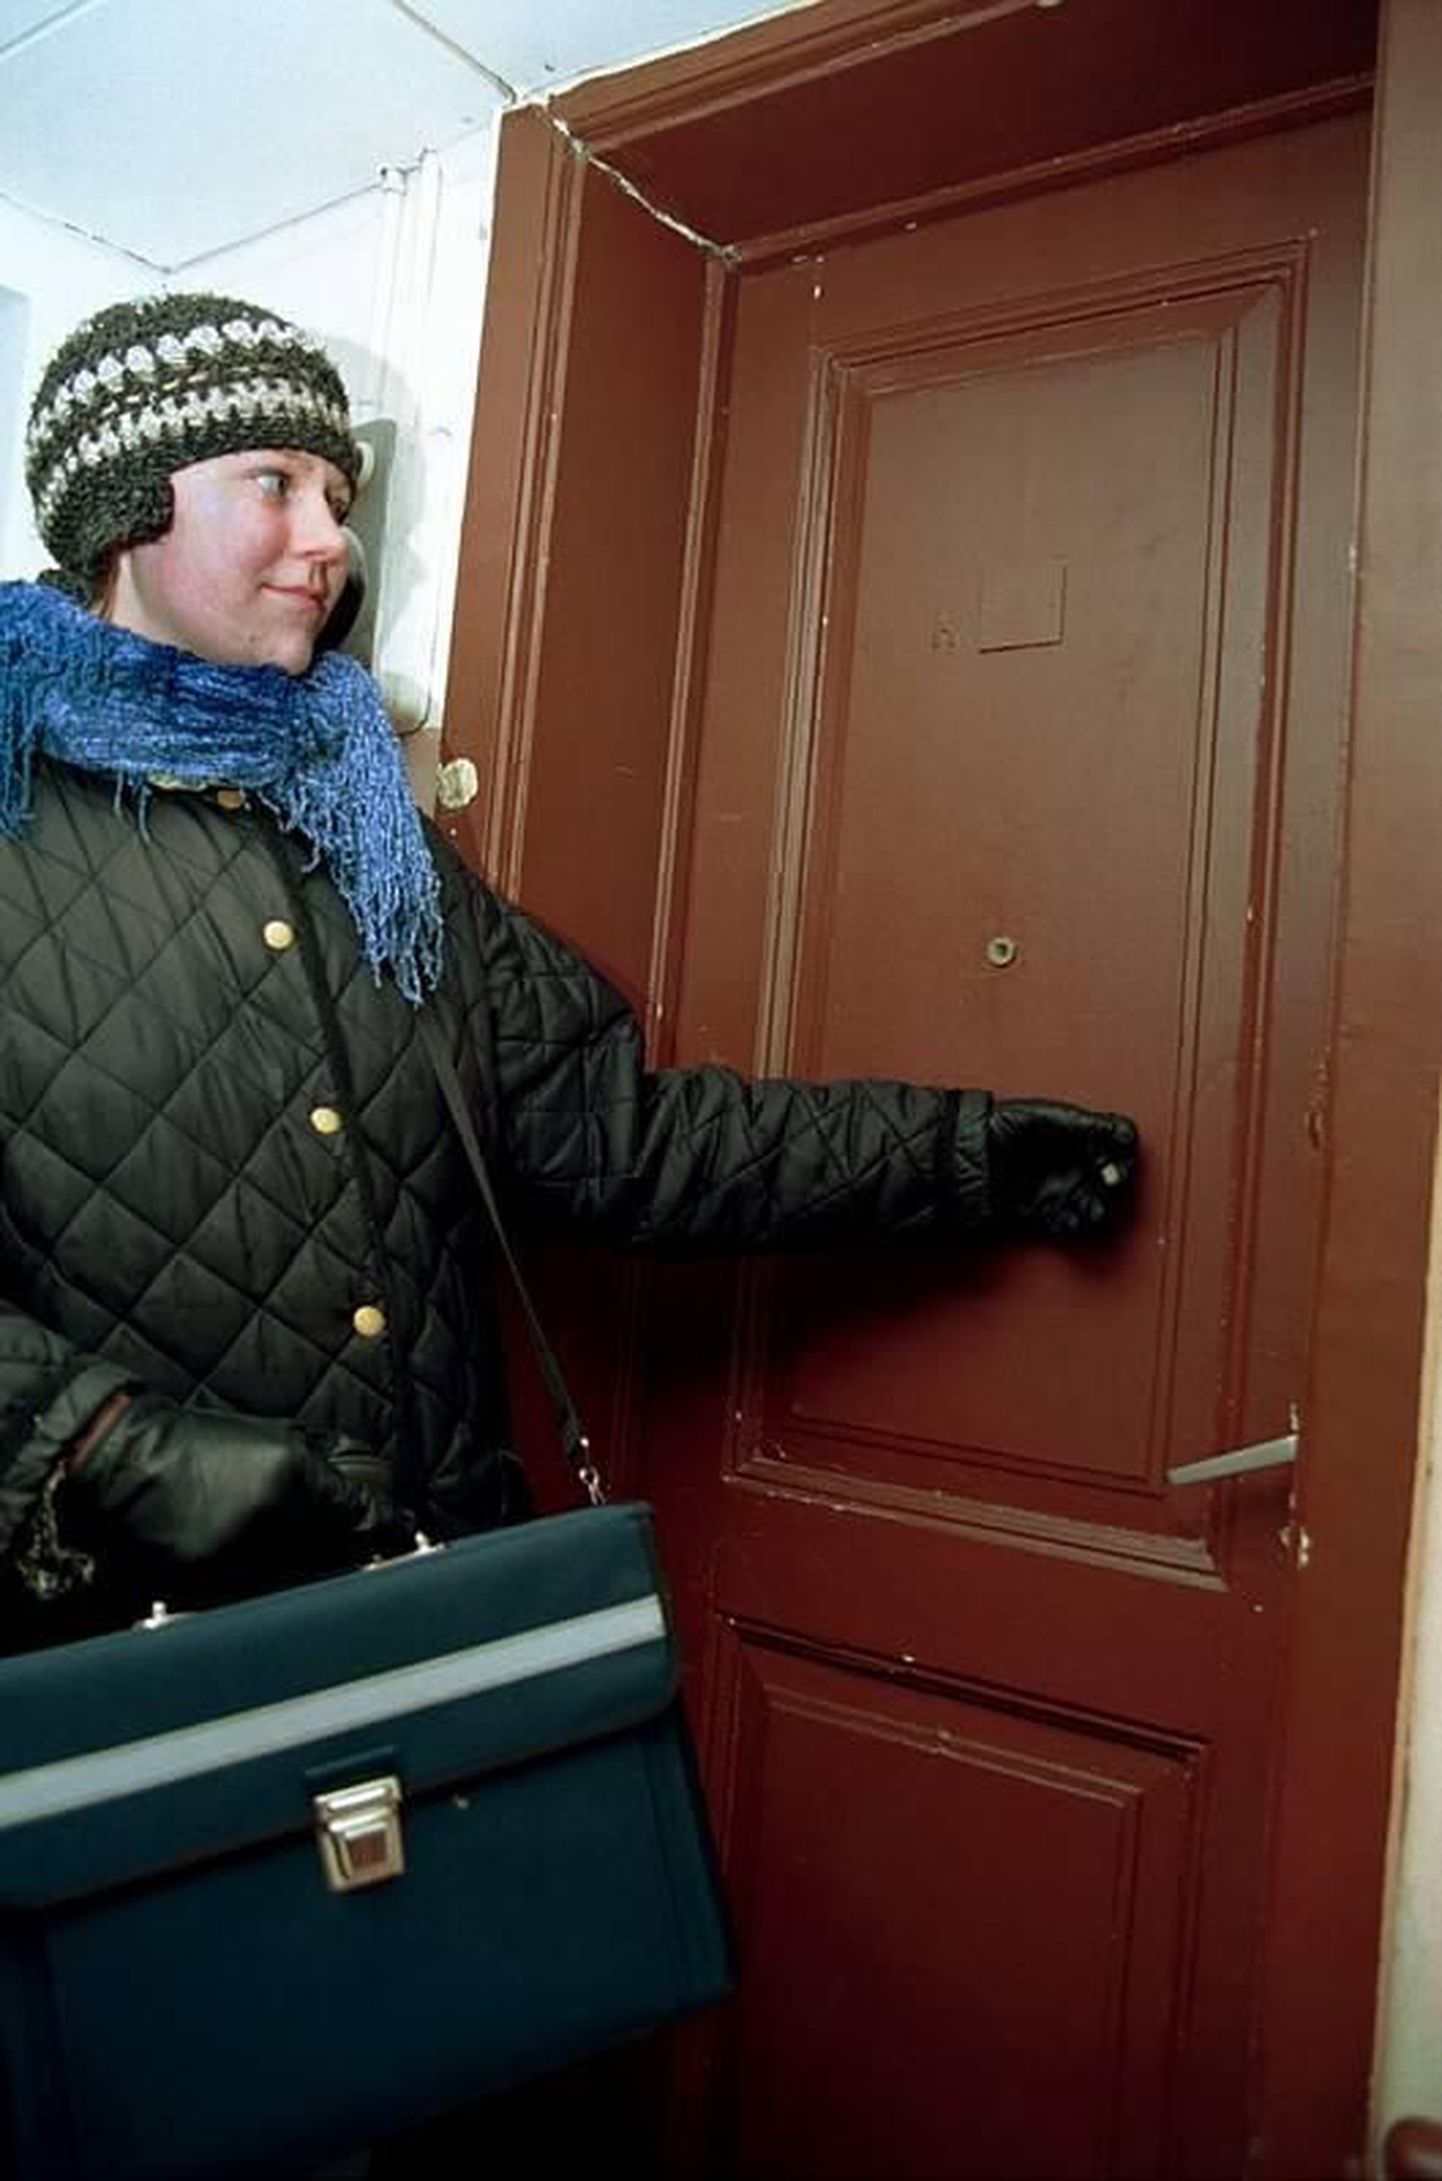 Rahvaloendaja koputab peagi uksele. Pildil Aive Antsov eelmise loenduse ajal.